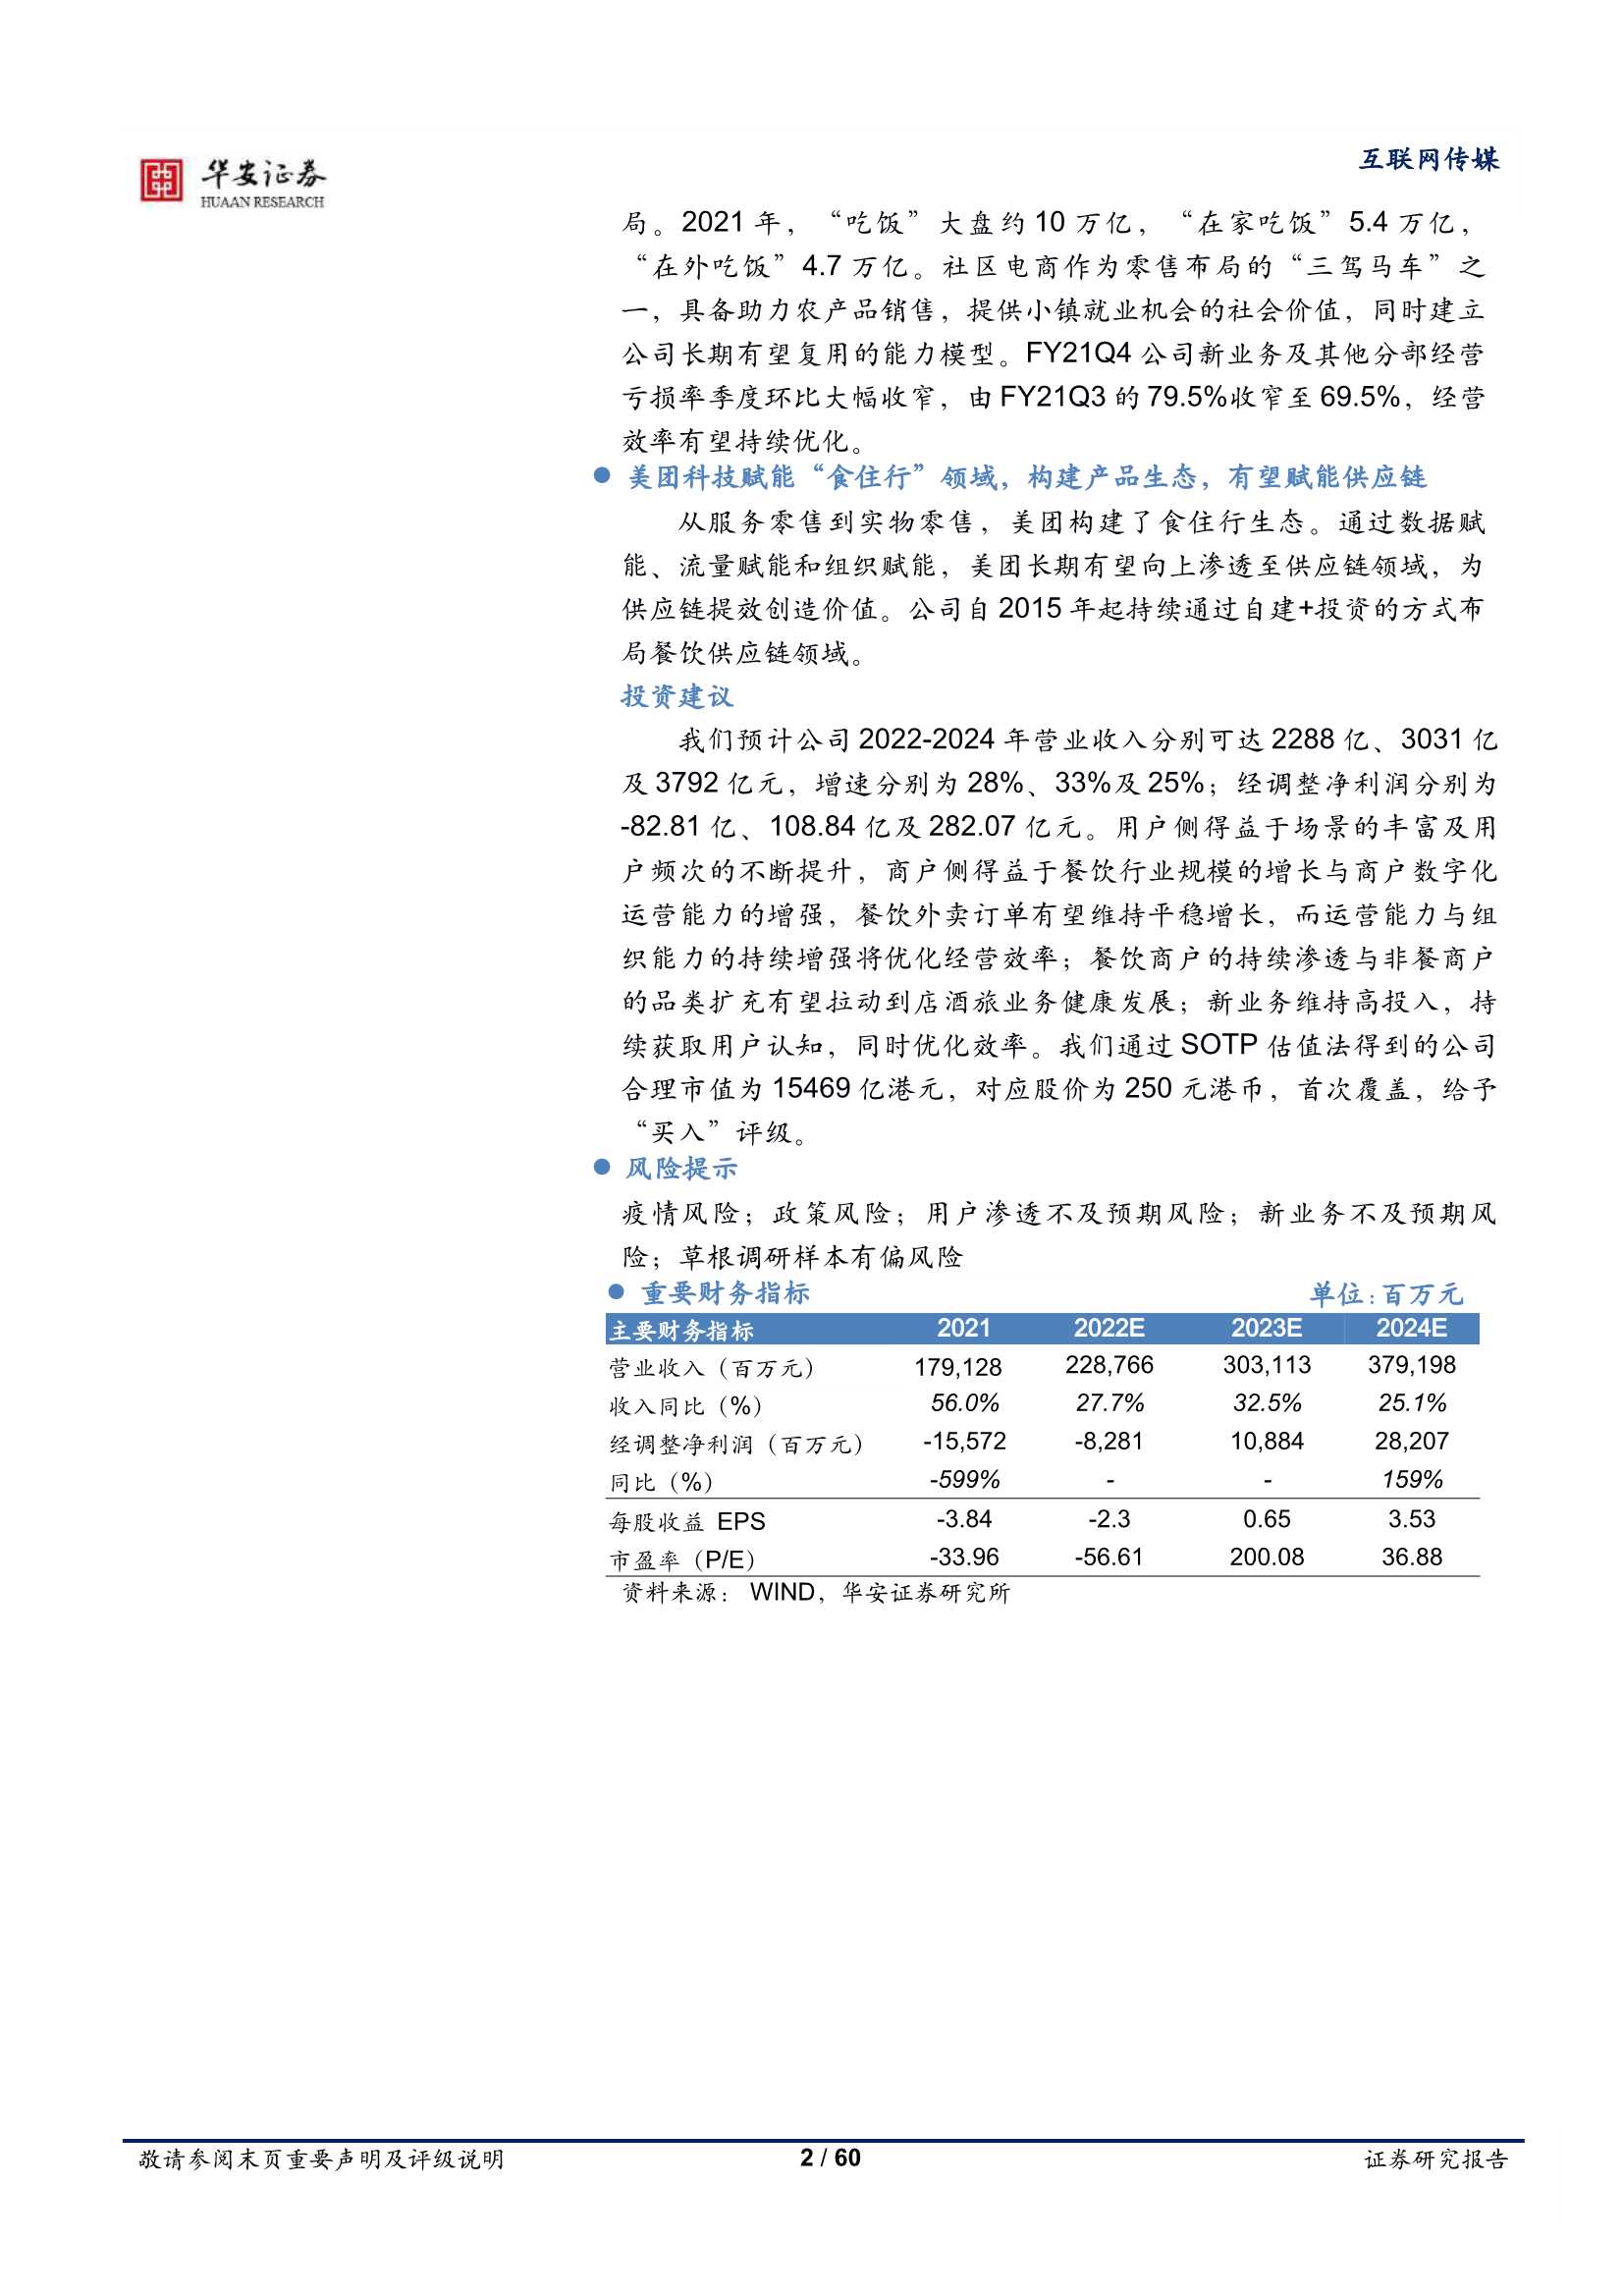 美团-W-3690.HK-从社会责任及生产效率优化看美团的成长空间-20220406-华安证券-60页